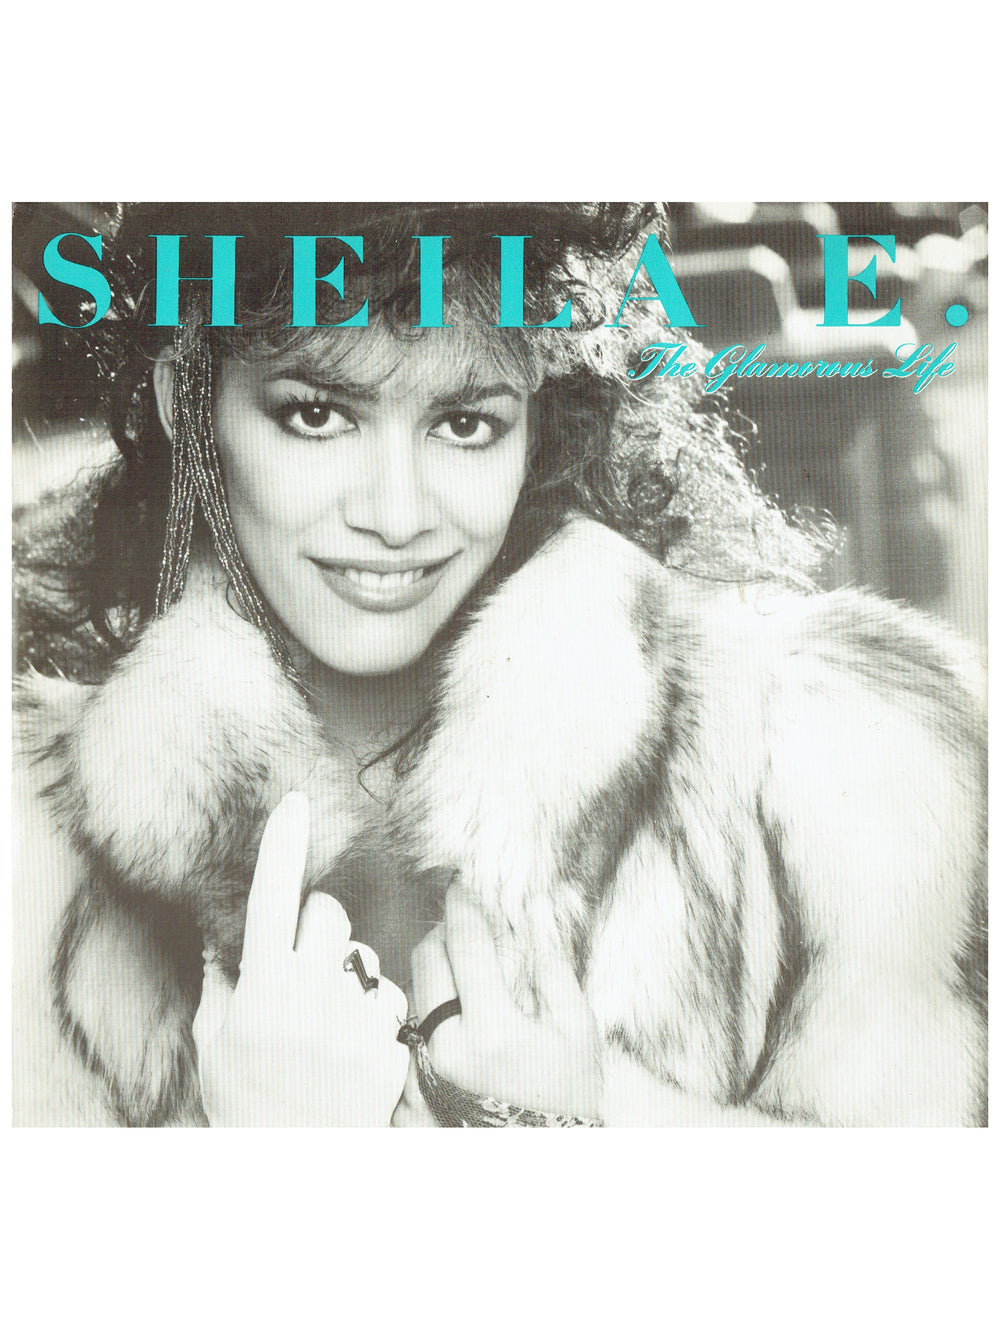 Prince – Sheila E The Glamorous Life Full Length 1Vinyl 12" Single UK Preloved: 1984